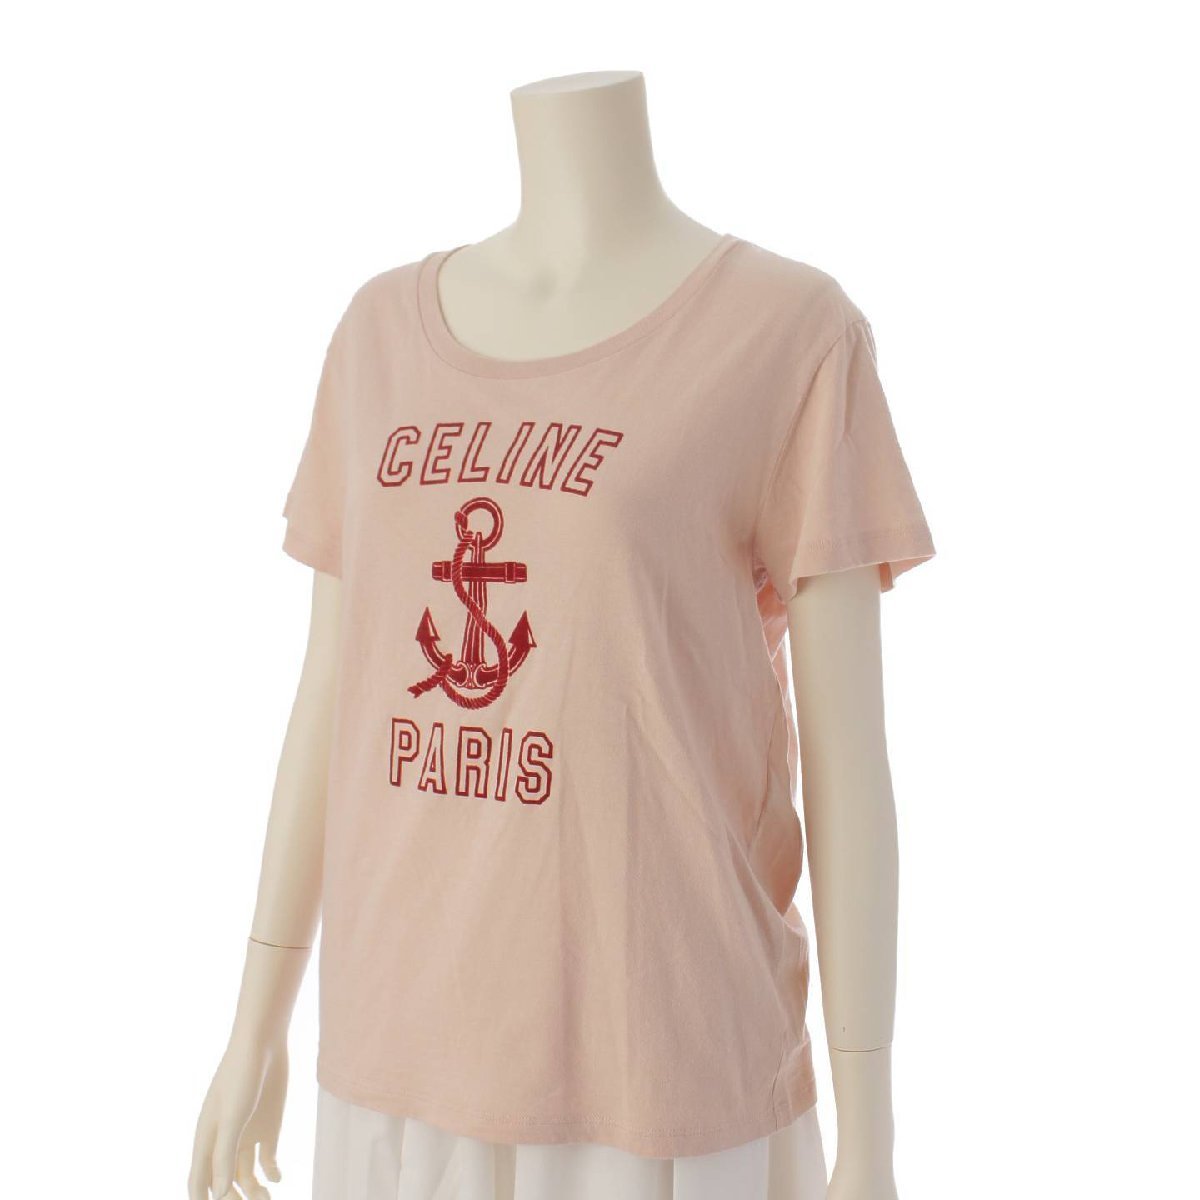 [ Celine ]Celine Logo короткий рукав хлопок cut and sewn футболка 2X586114L розовый M [ б/у ]188225